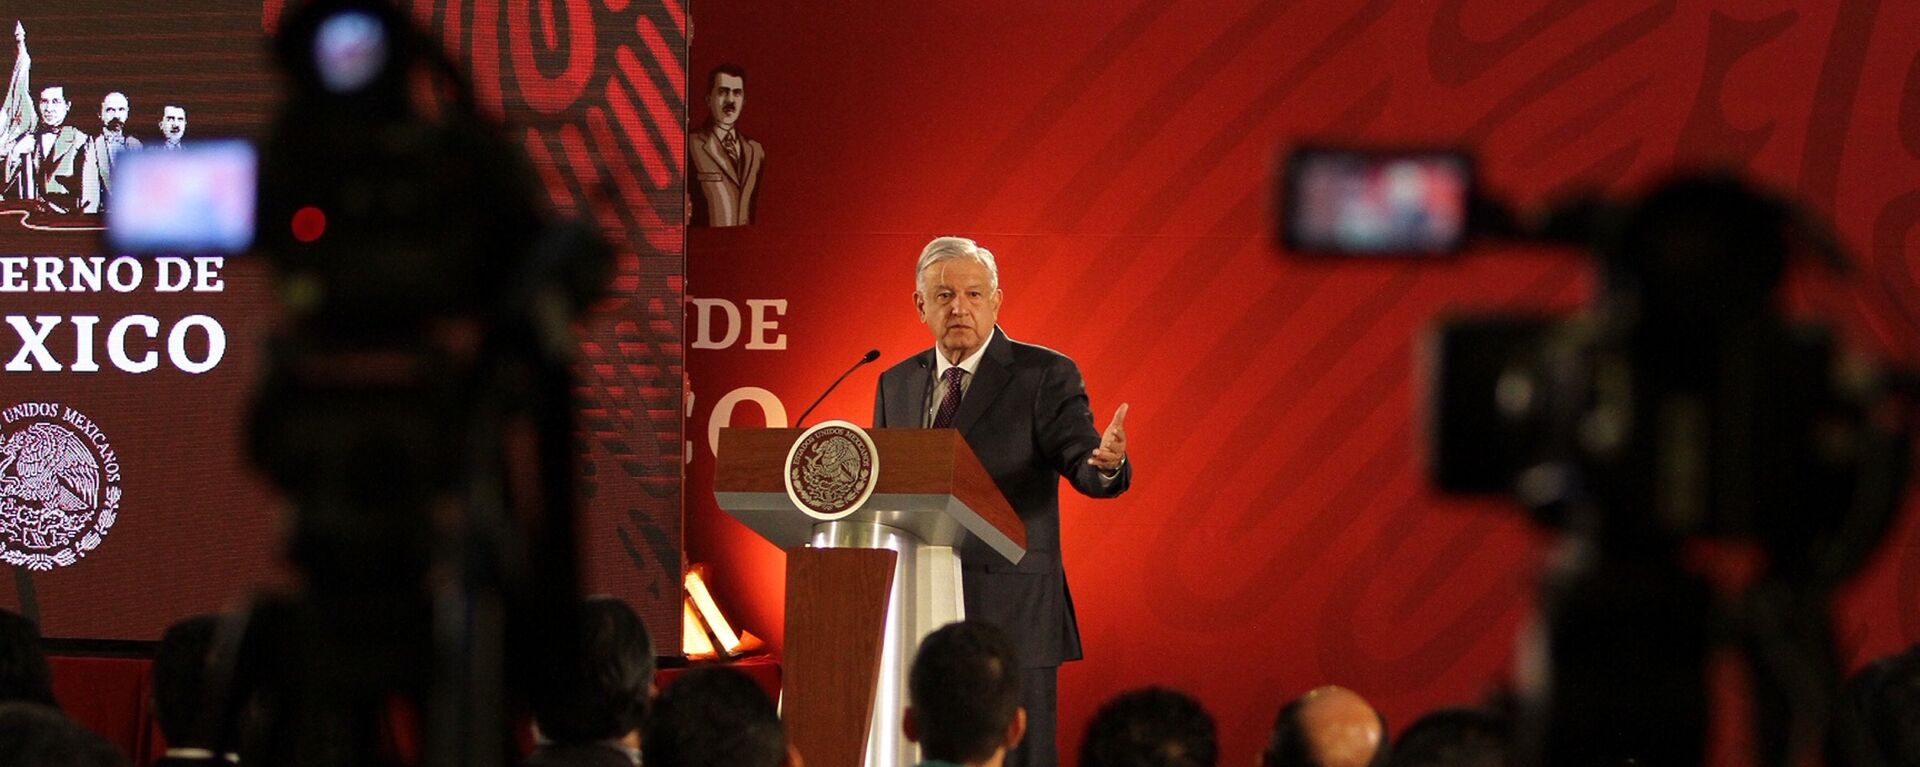 Andrés Manuel López Obrador, presidente de México - Sputnik Mundo, 1920, 12.08.2020